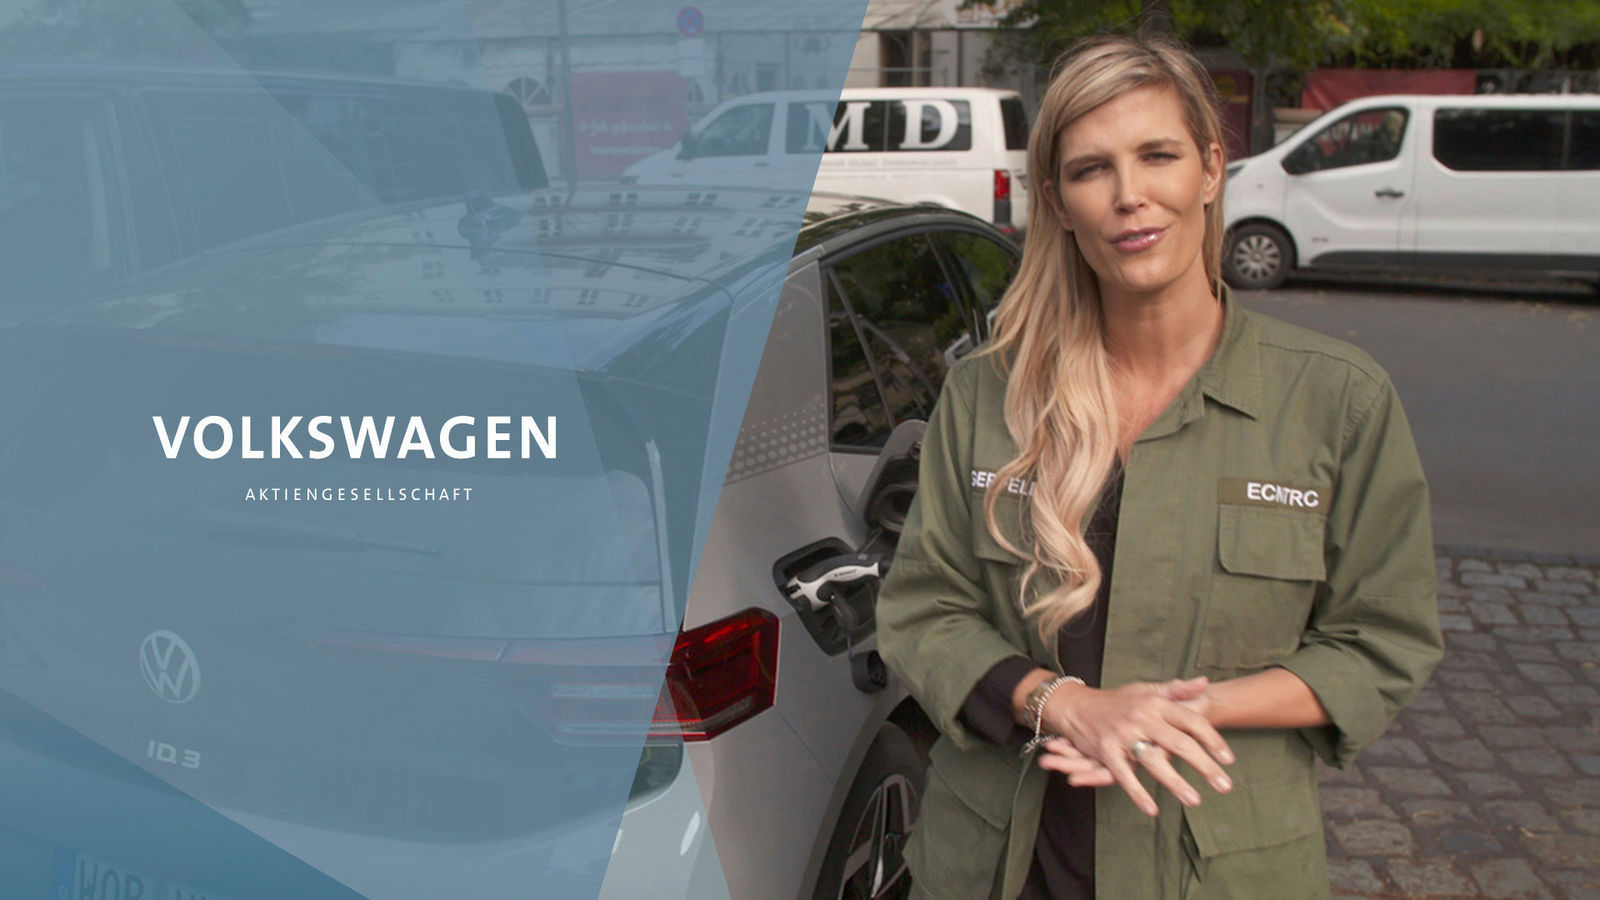 YouTube/Download-Link: "DRIVE. Volkswagen Group Forum: Verena Wriedt and the Volkswagen ID.3